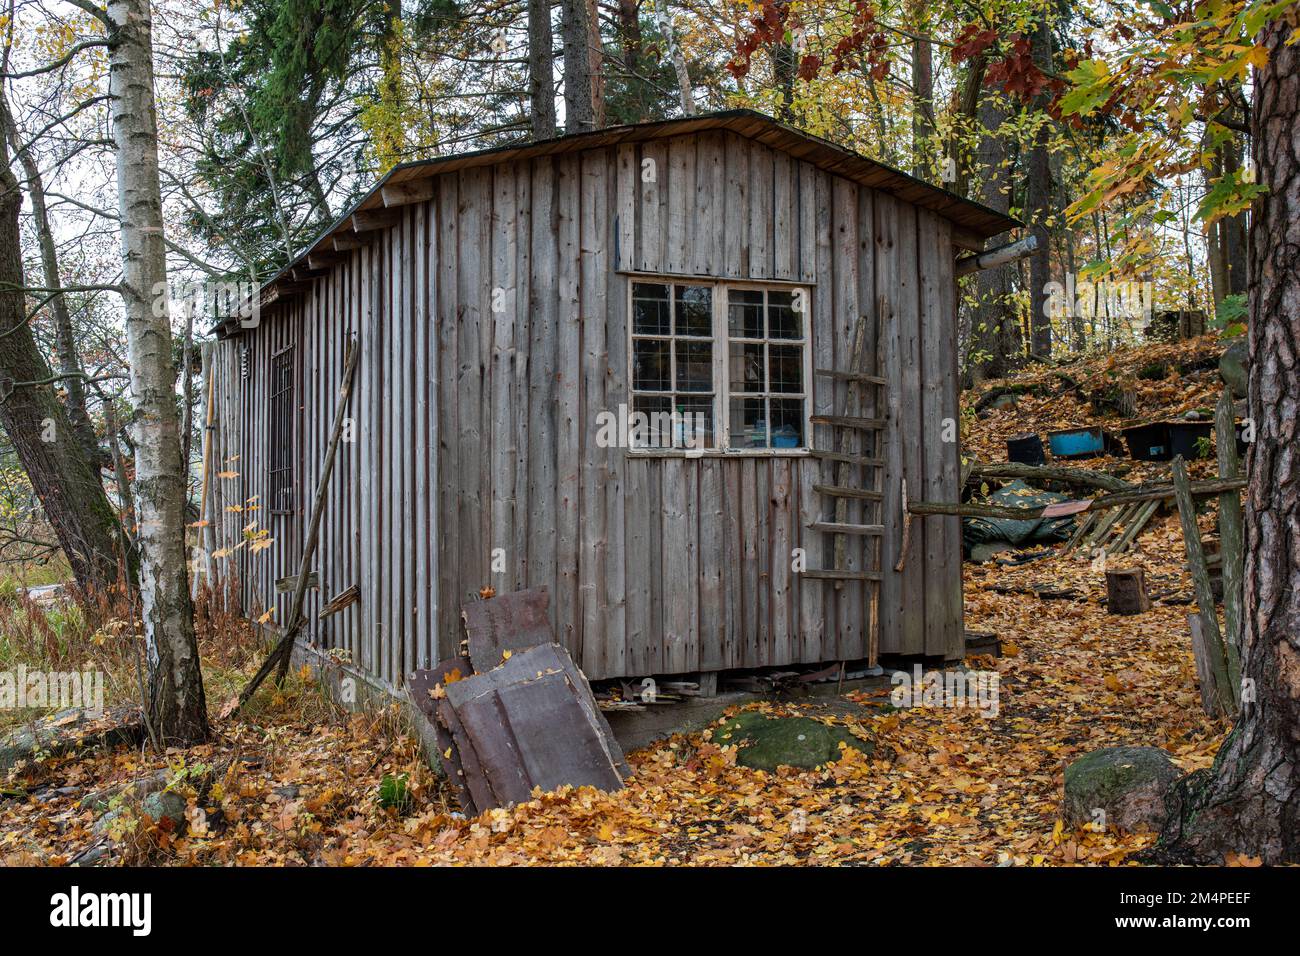 Old weathered wooden hut in Läntinen Pukkisaari, Vähä-Meilahti district of Helsinki, Finland Stock Photo